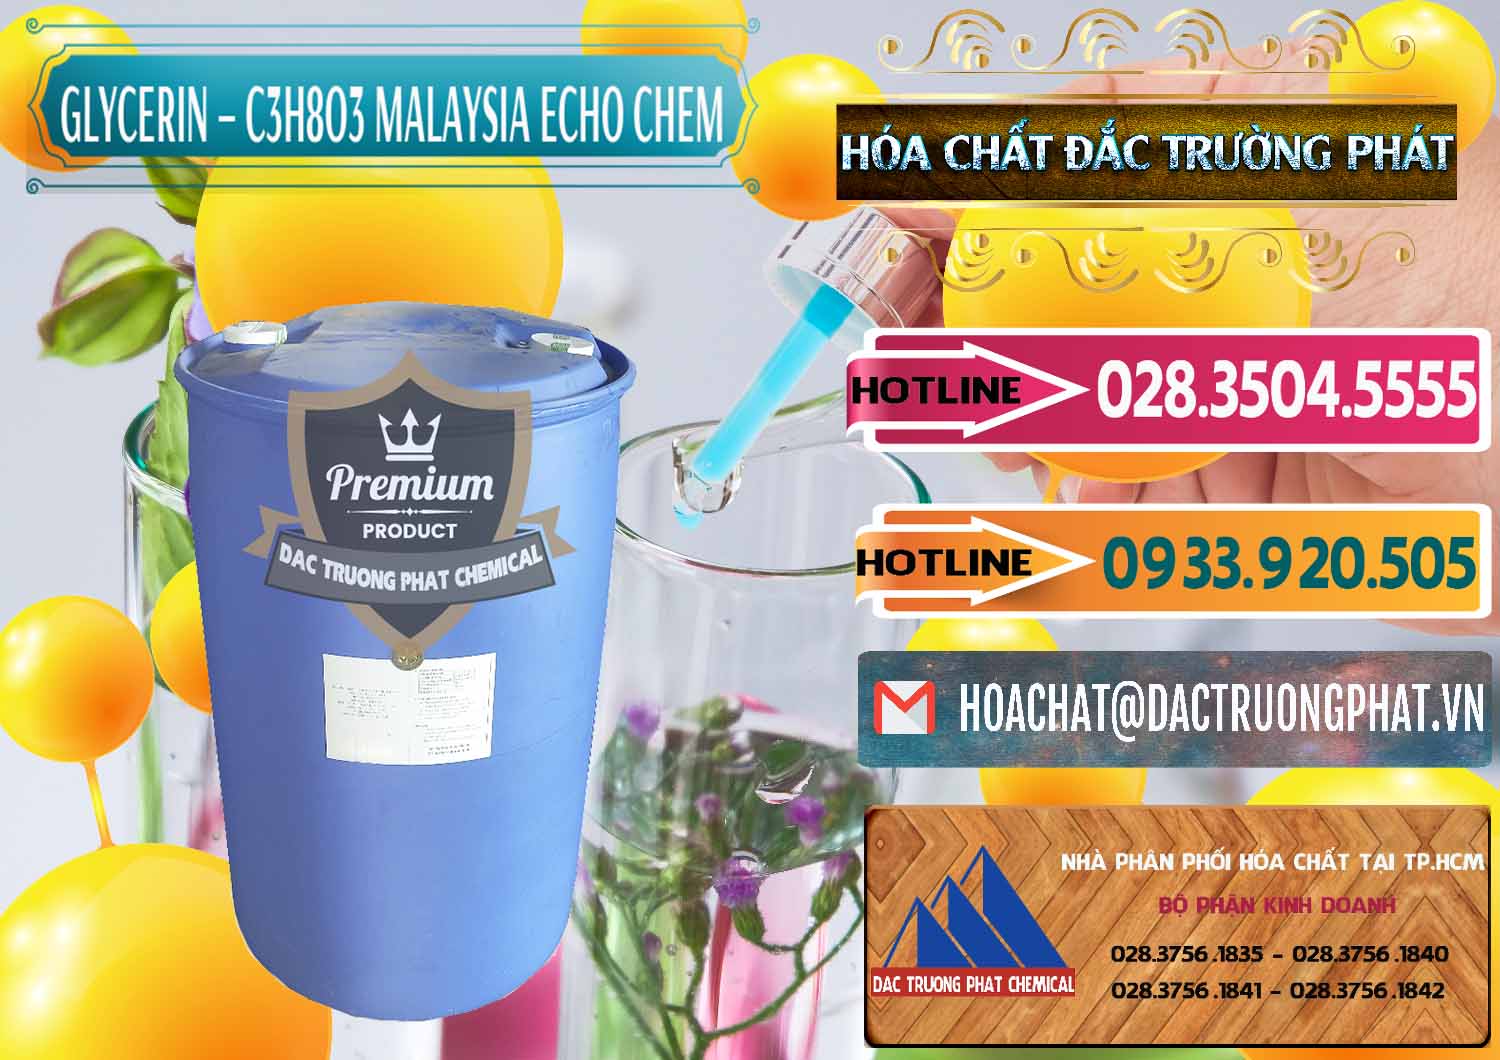 Nhà phân phối - bán Glycerin – C3H8O3 99.7% Echo Chem Malaysia - 0273 - Đơn vị chuyên cung cấp & kinh doanh hóa chất tại TP.HCM - dactruongphat.vn